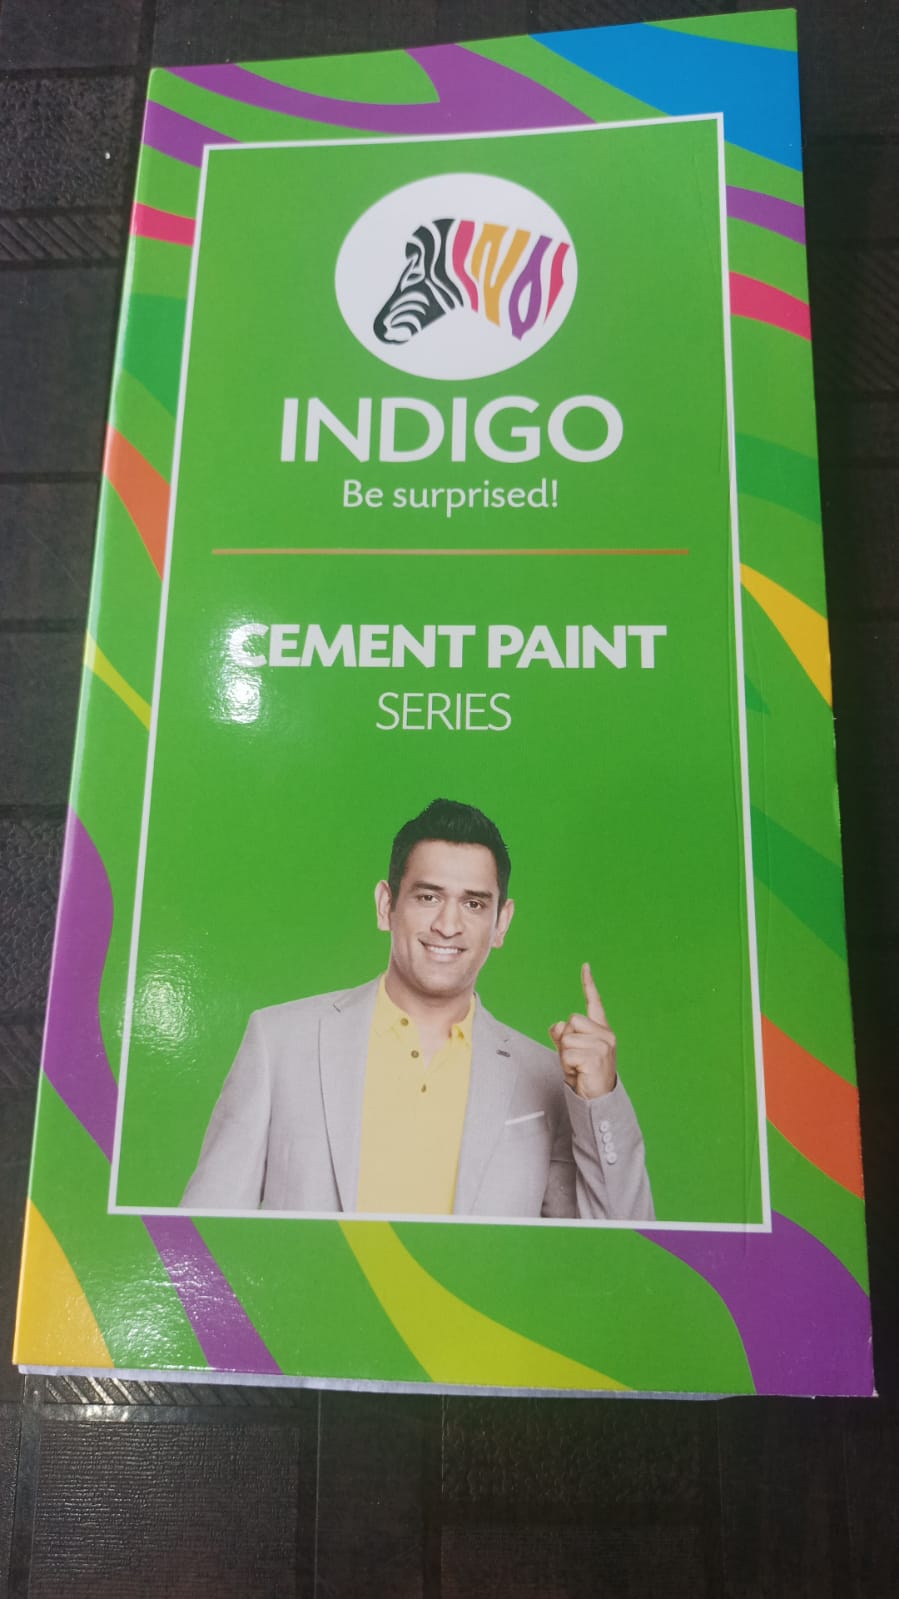 Indigo paints